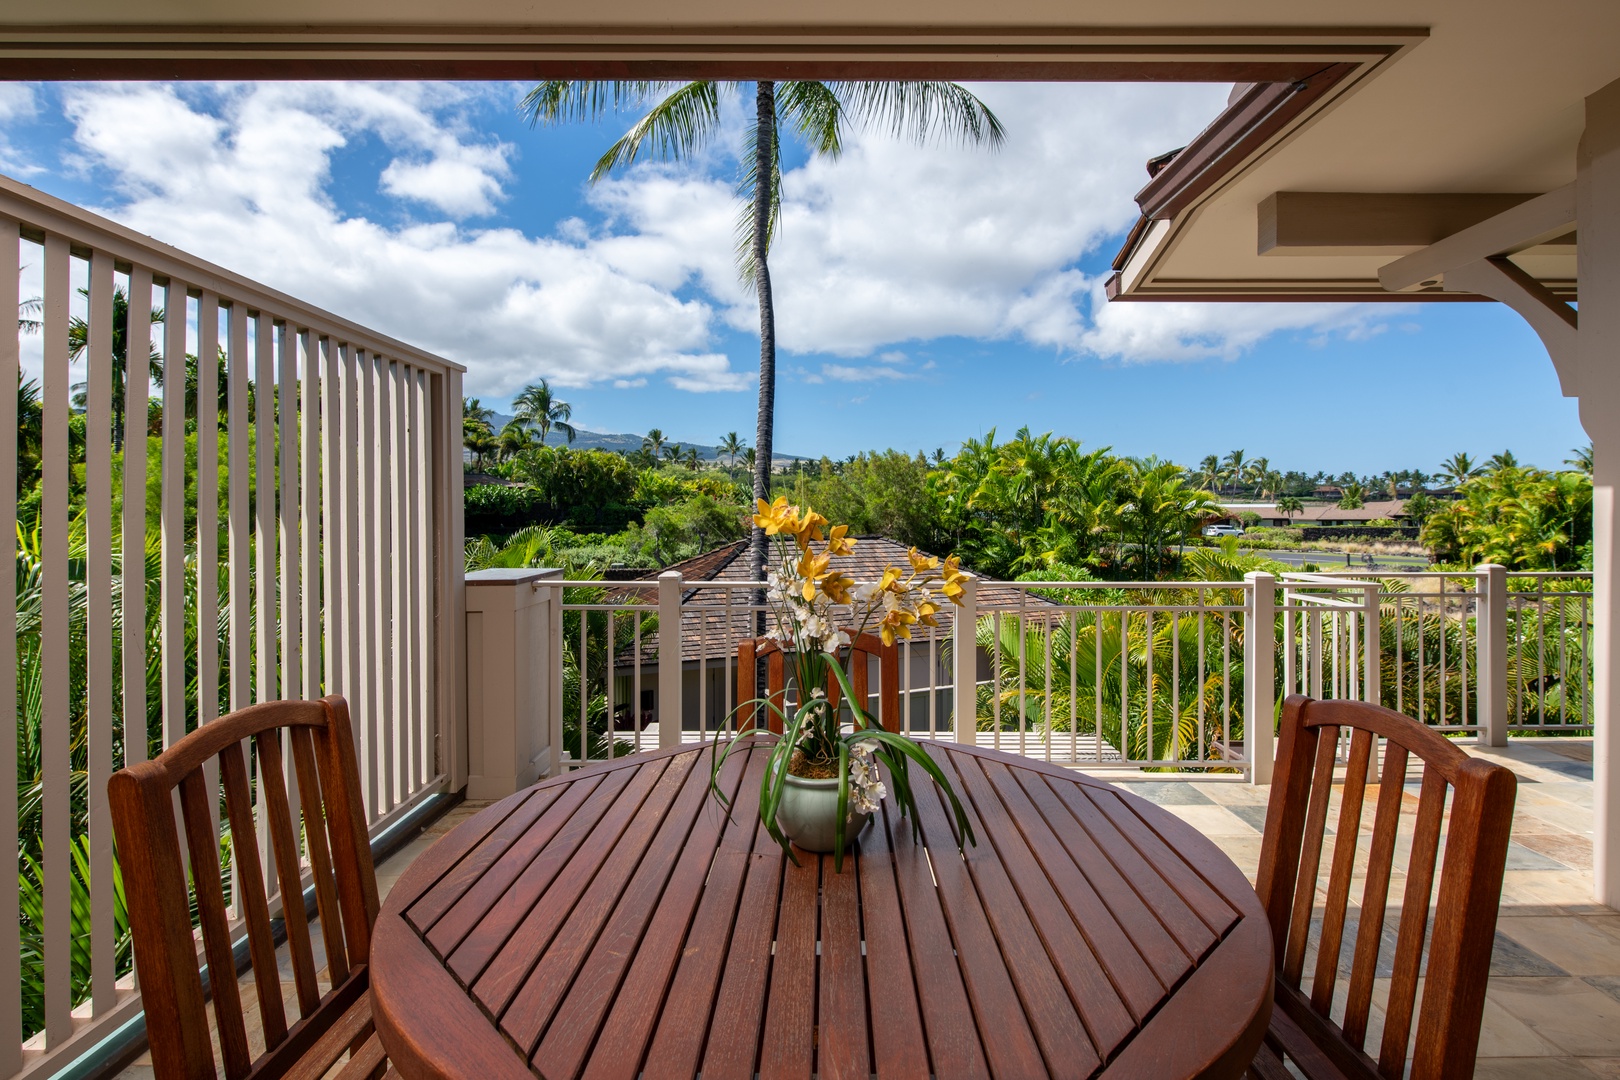 Kailua Kona Vacation Rentals, 3BD Ka'Ulu Villa (109A) at Four Seasons Resort at Hualalai - An al-fresco dining option with views on the upstair lanai.